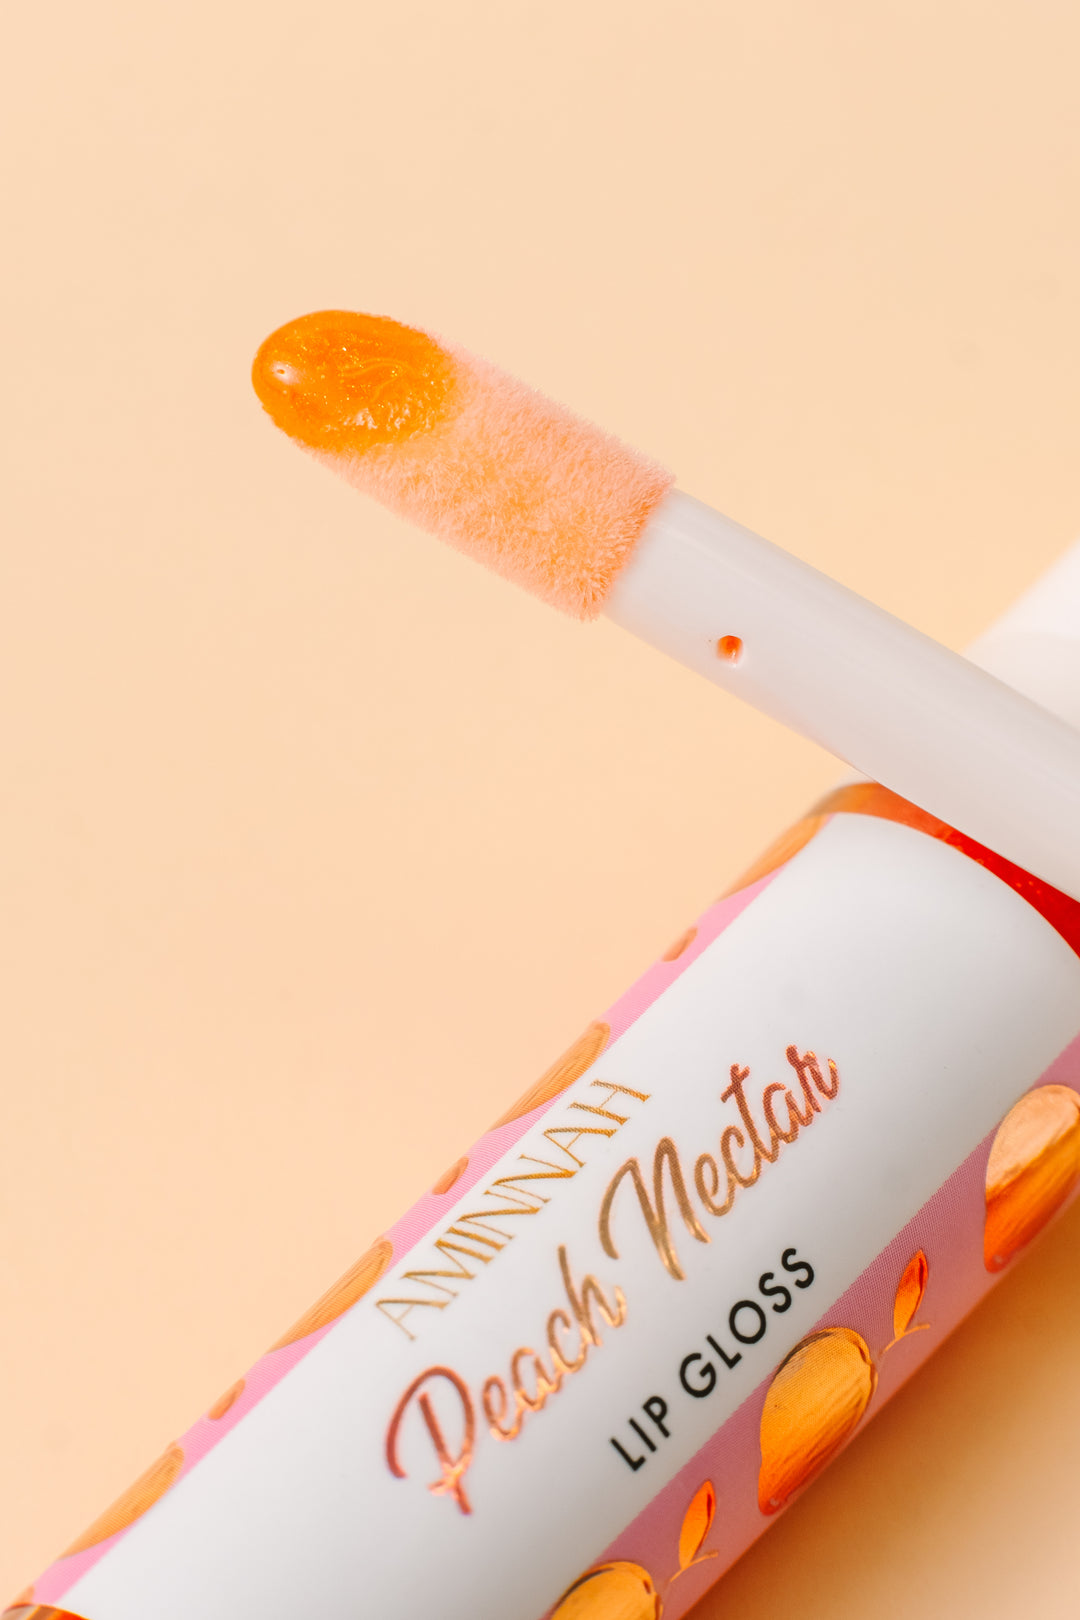 Peach Nectar Lip Gloss